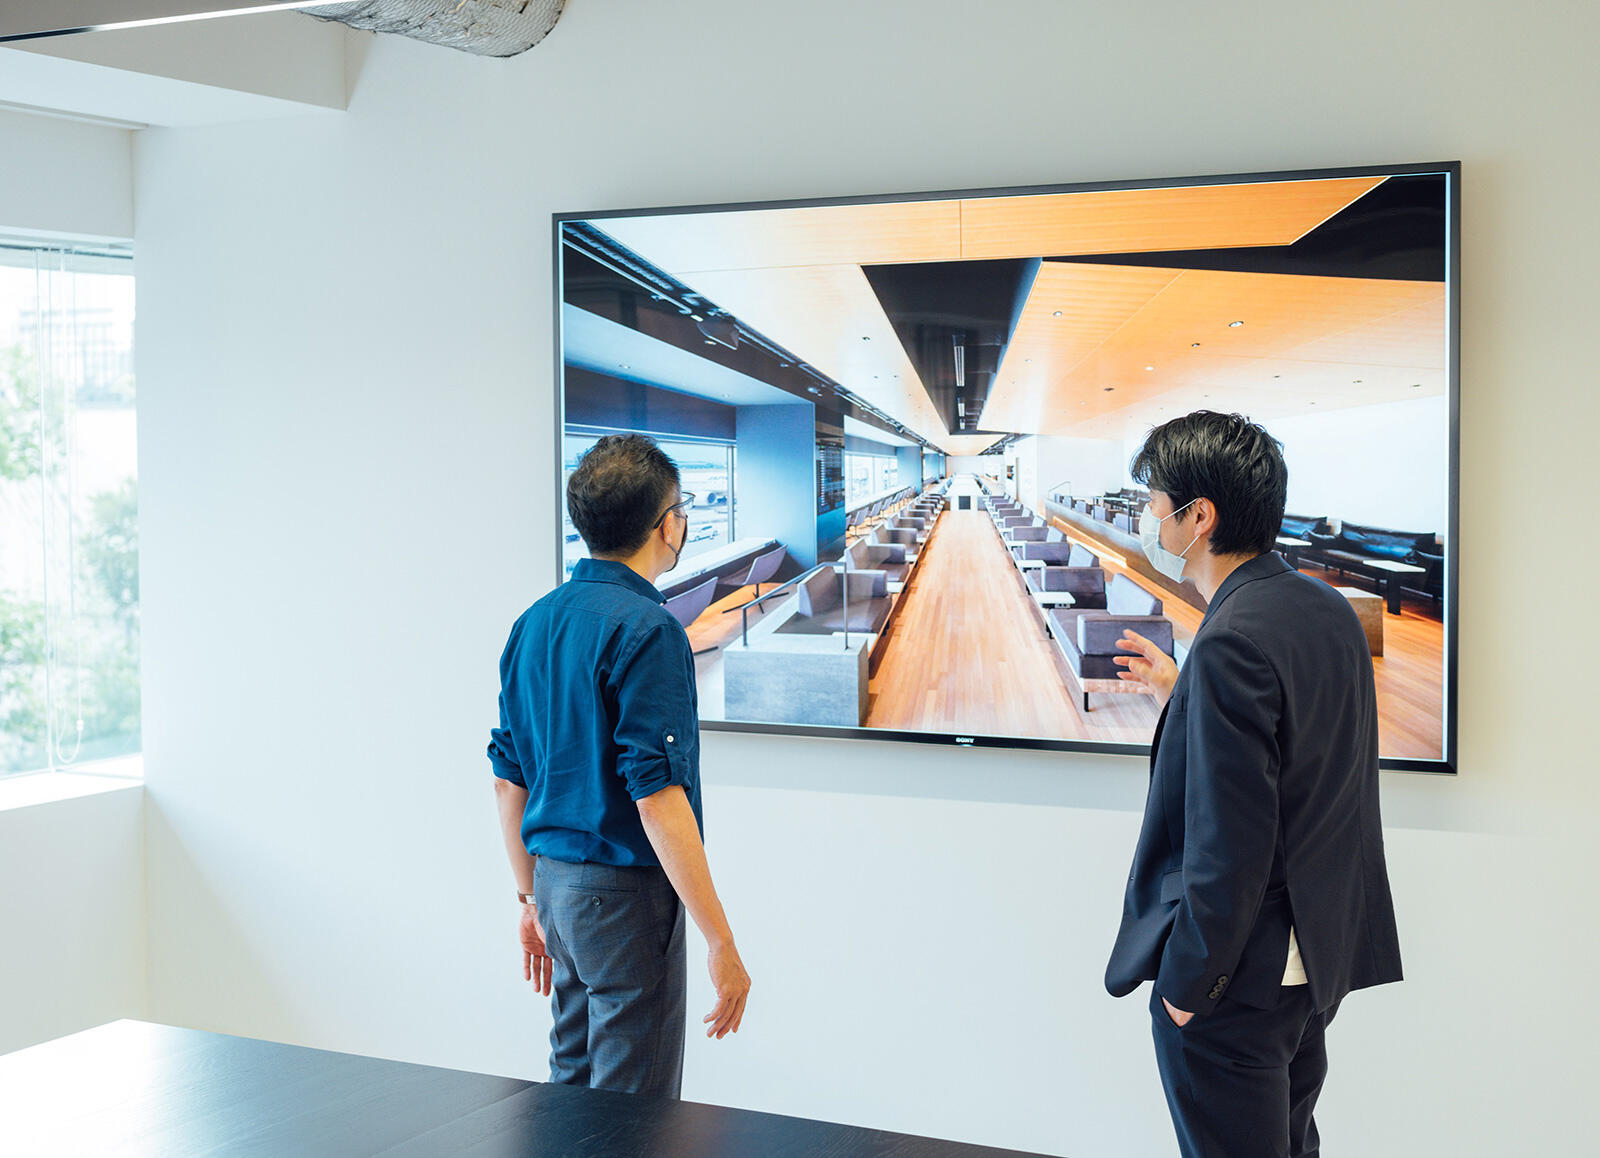 対談は田川さんが代表を務めるTakramのオフィスにて行った。スクリーンに映っているのは、羽田空港の有料ラウンジである「POWER LOUNGE」。 Takramは同場所のクリエイティブディレクションを日本デザインセンターおよび原デザイン研究所と担当。